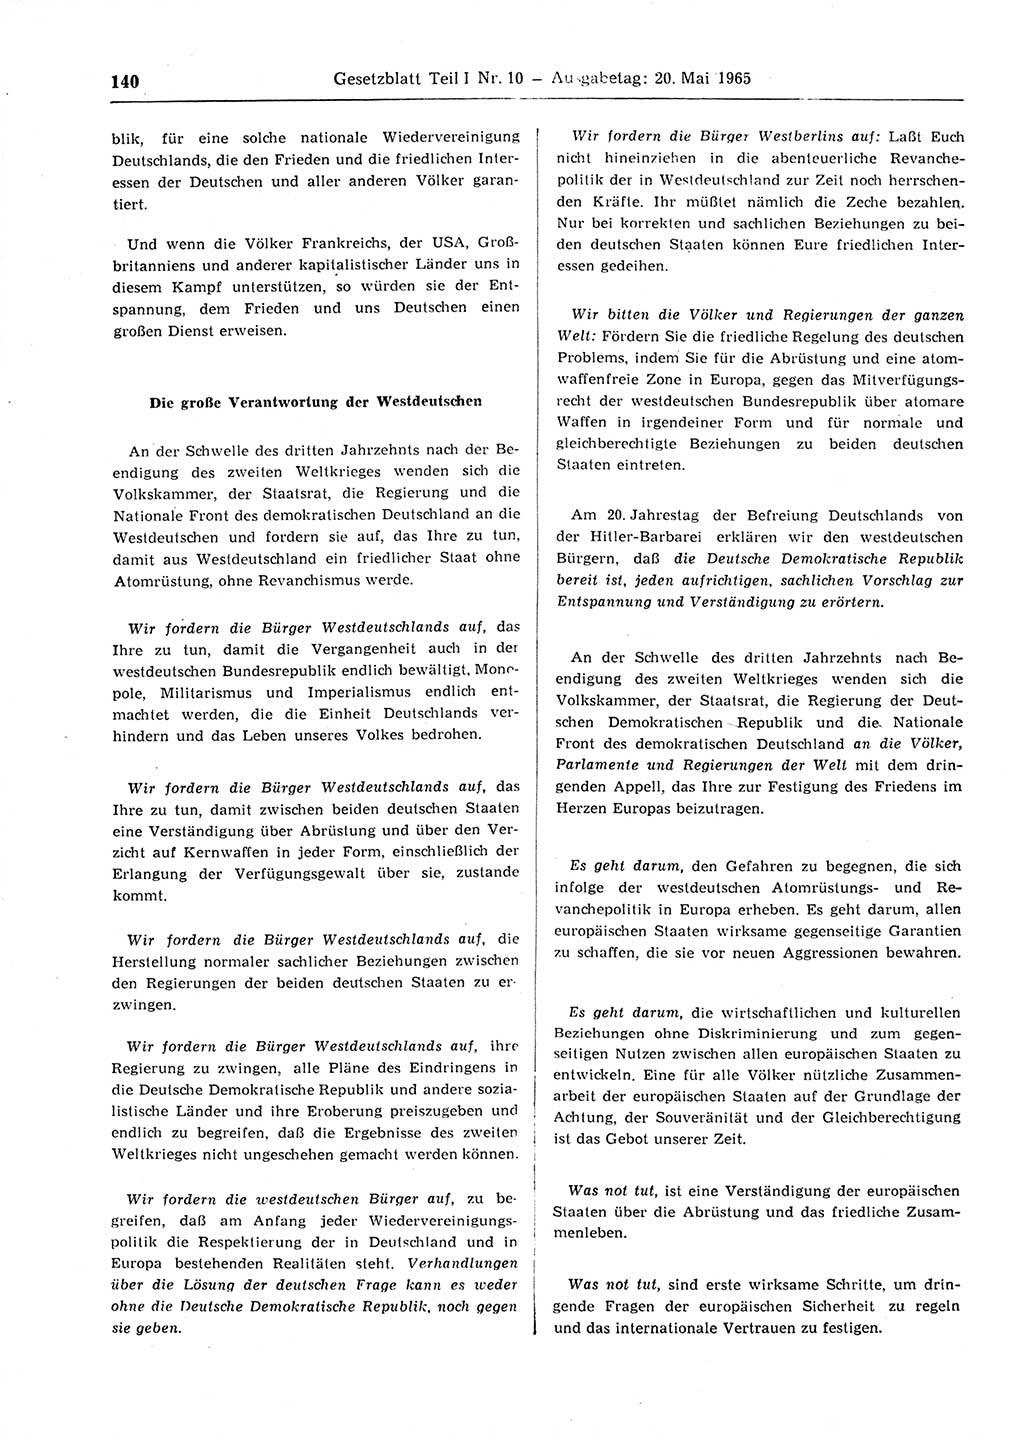 Gesetzblatt (GBl.) der Deutschen Demokratischen Republik (DDR) Teil Ⅰ 1965, Seite 140 (GBl. DDR Ⅰ 1965, S. 140)